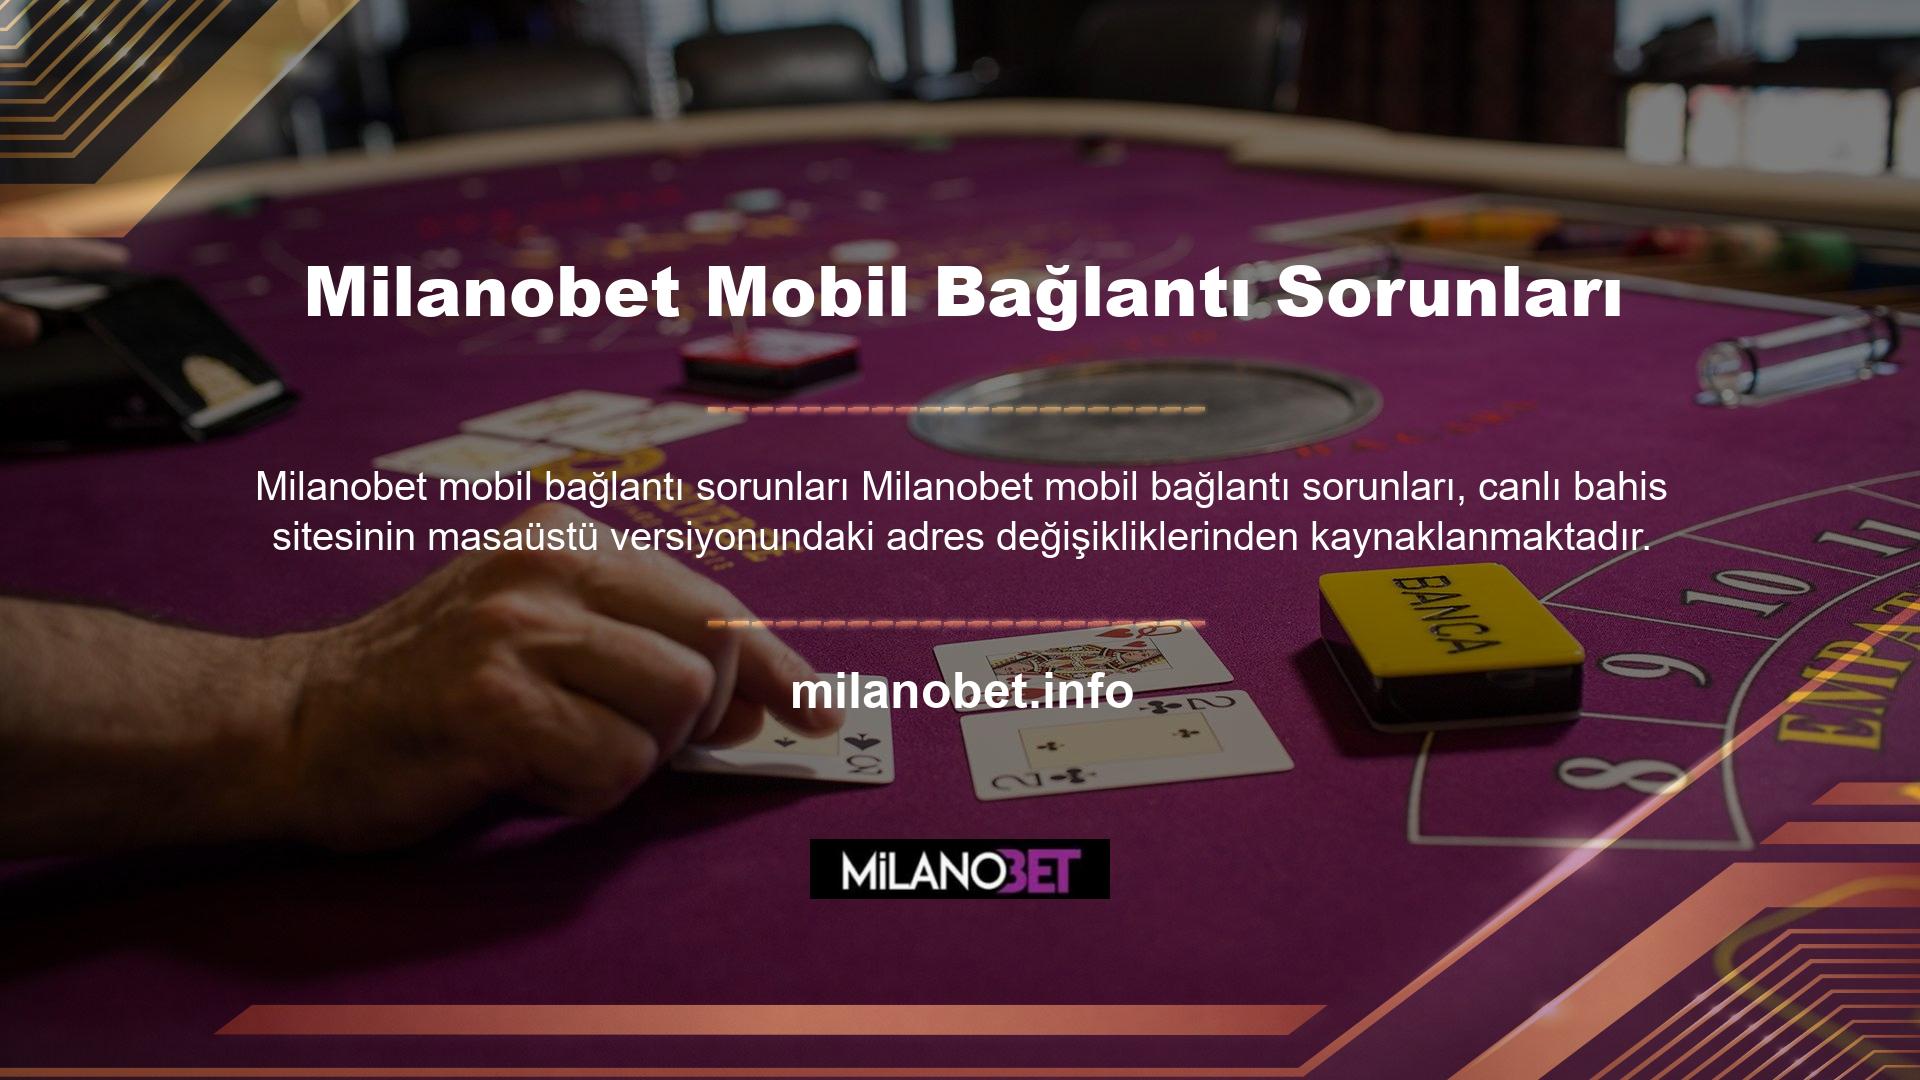 Bir casino kuruluşu bir adresi kapattığında, tarayıcıyı destekleyen mobil web sitesi de adresi kapatır